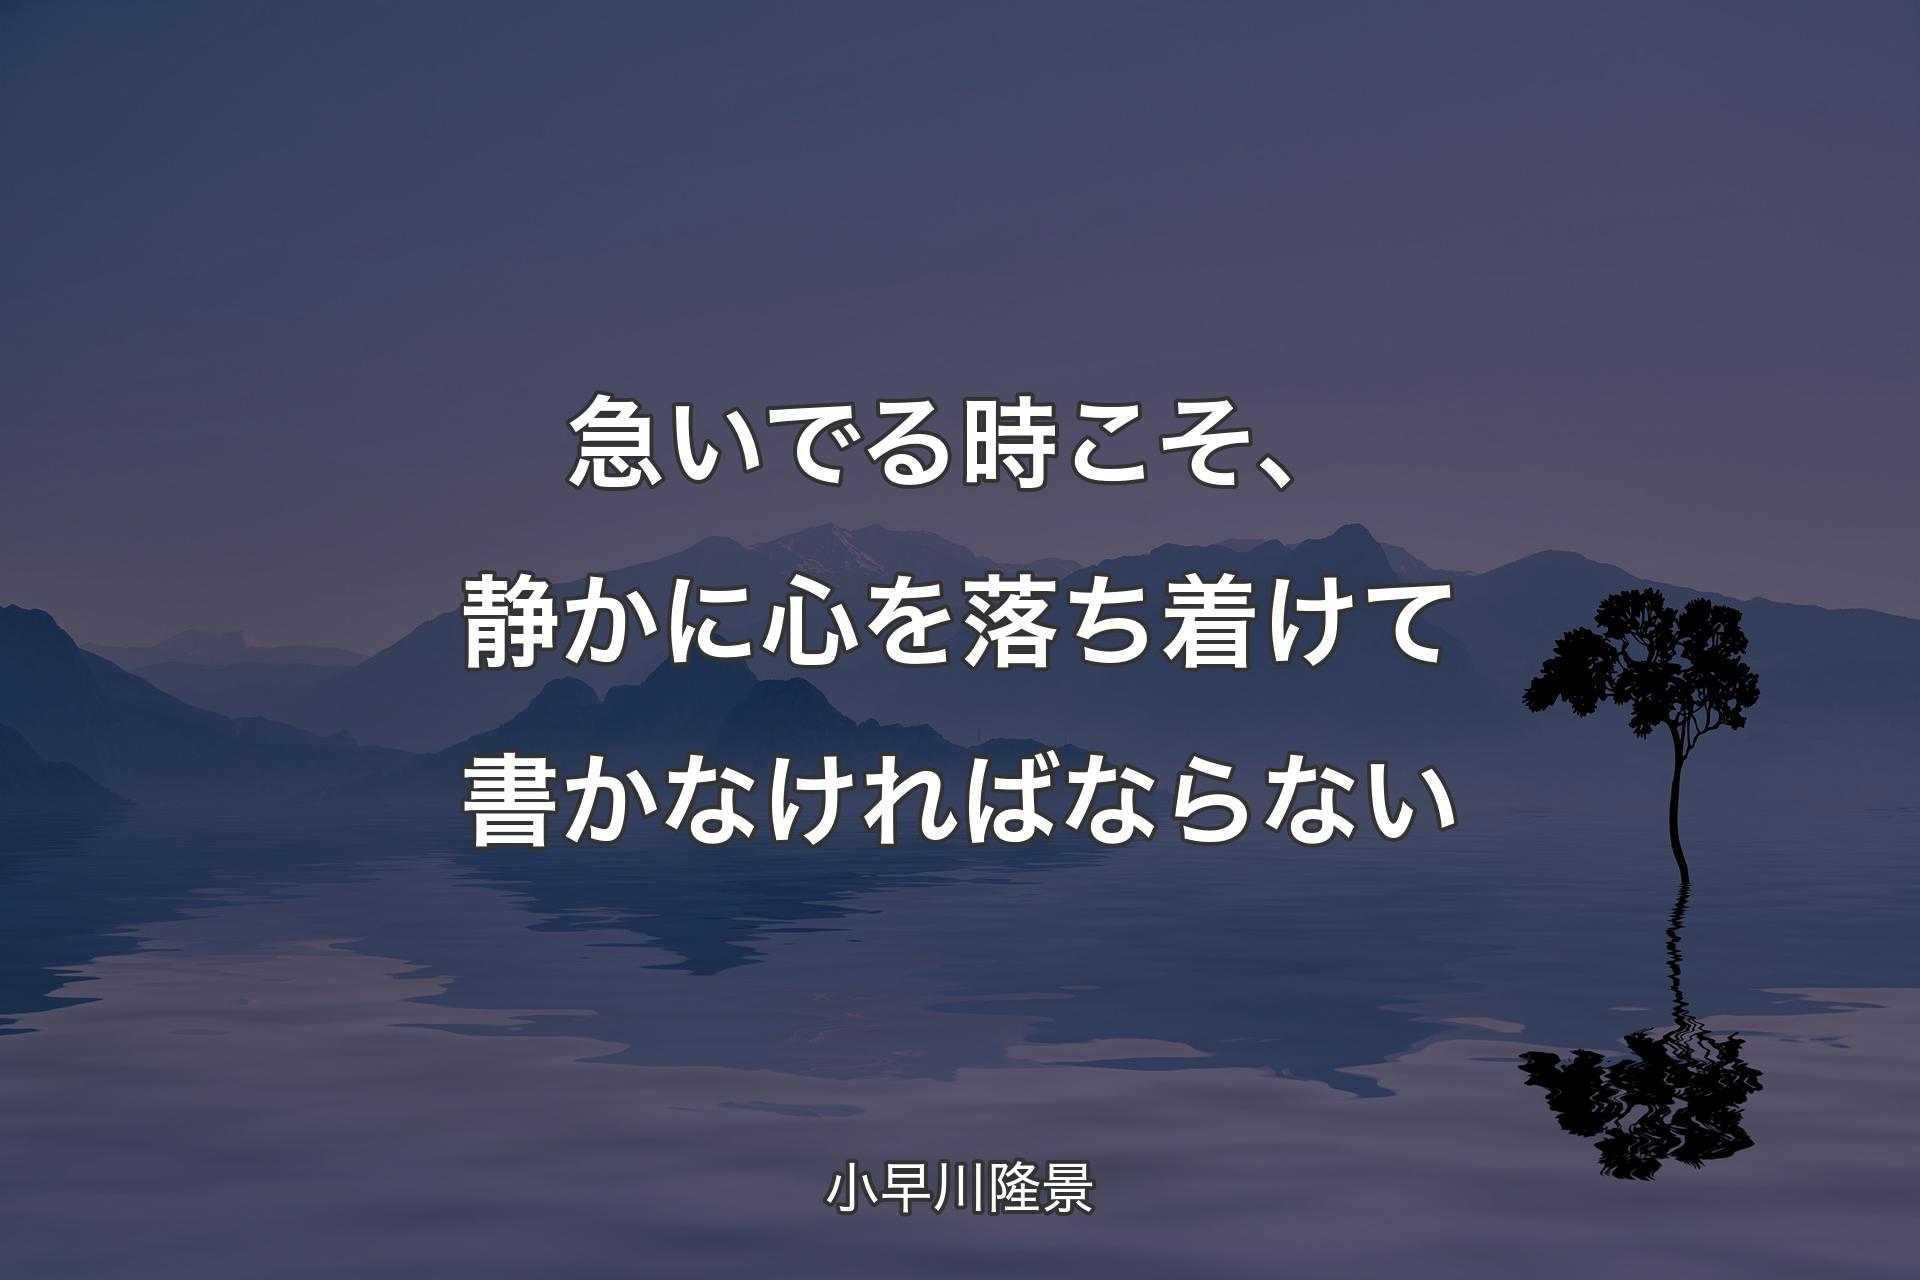 【背景4】急いでる時こそ、静かに心を落ち着けて書かなければならない - 小早川隆景